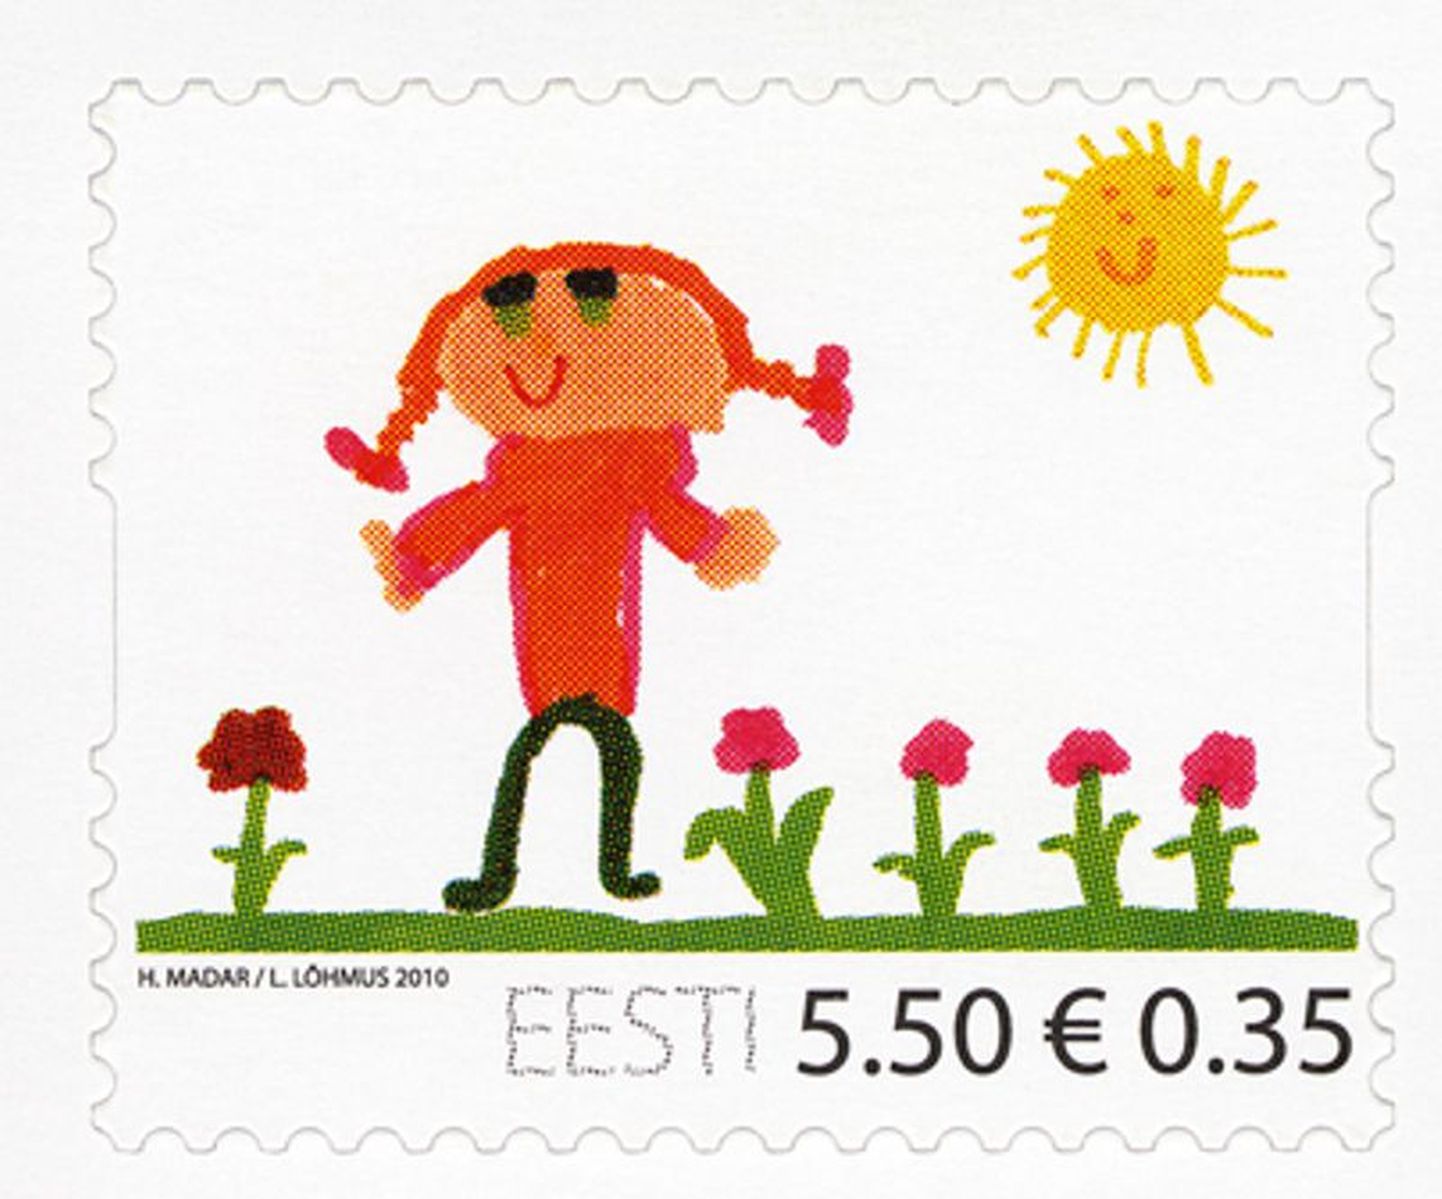 Lastekaitsepäeva postmargil on 6aastase Tallinna tüdruku Helina Madari joonistus.